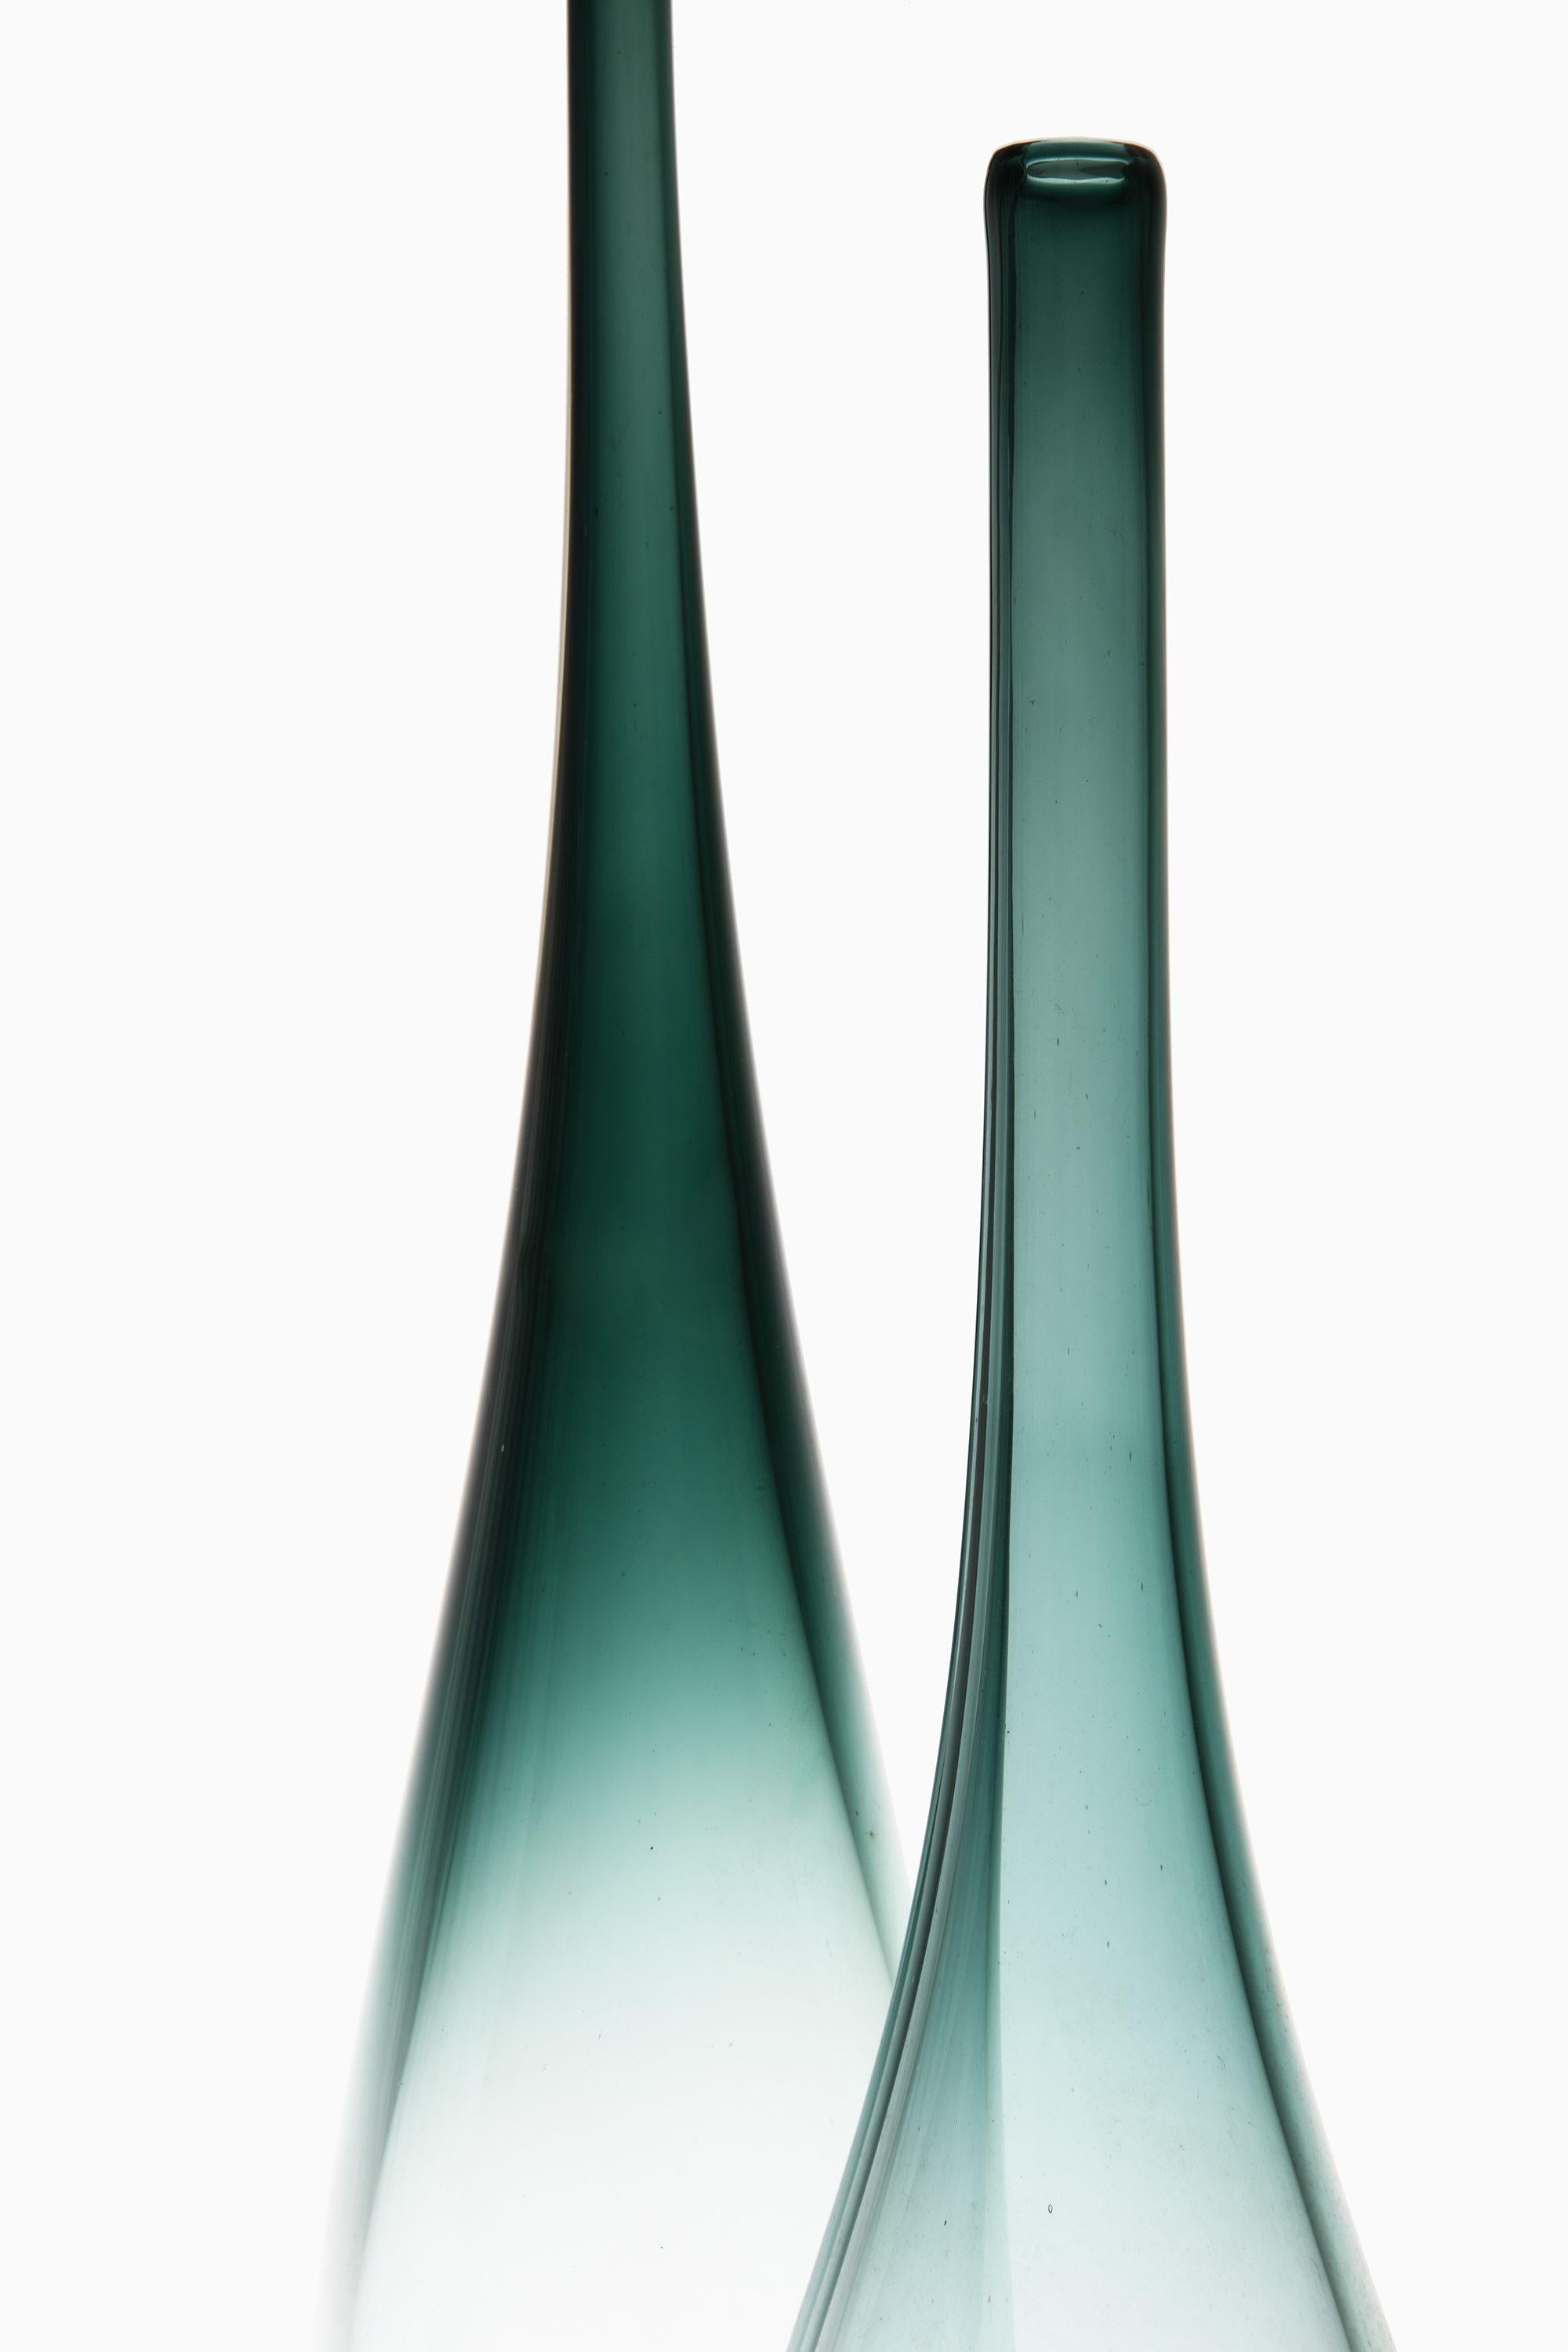 Paire de vases en verre de Bengt Orup, années 1950

Informations supplémentaires :
Matériau : Verre
Style : Milieu du siècle, Scandinave
Produit par Johansfors en Suède
Dimensions (L x P x H) : 10 x 10 x 35,5 - 42 cm
Condit : Bon état vintage, avec